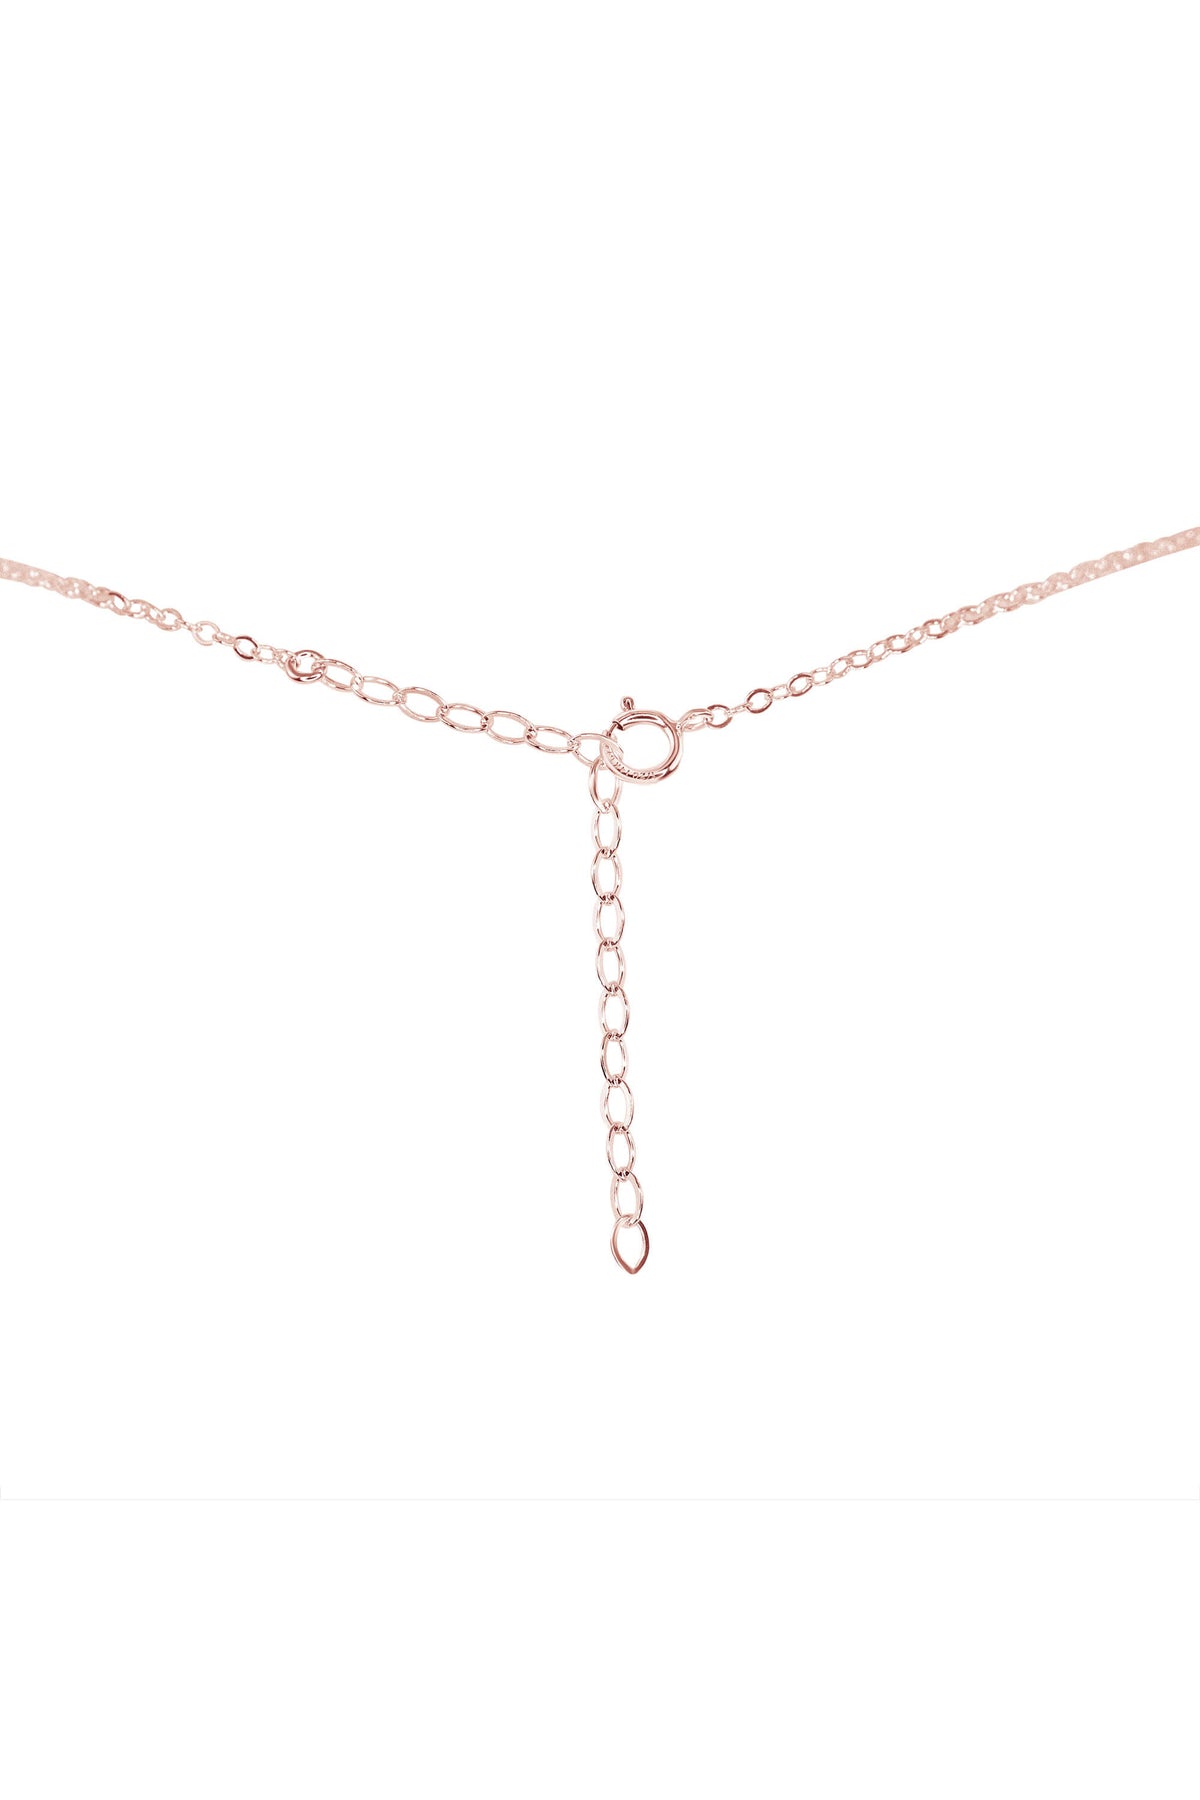 Raw Crystal Pendant Choker - Peridot - 14K Rose Gold Fill - Luna Tide Handmade Jewellery